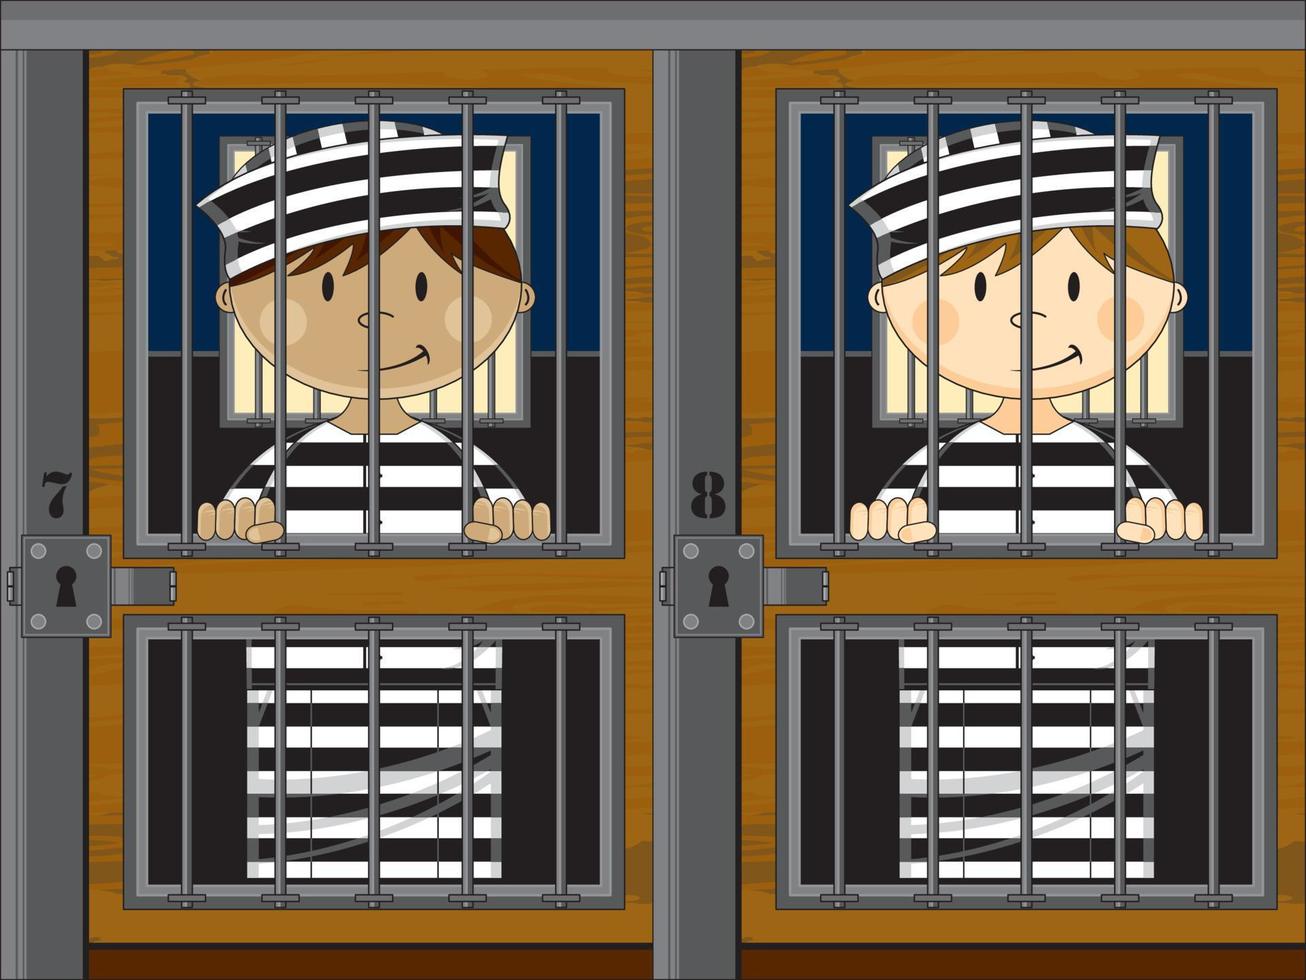 dessin animé les prisonniers portant classique rayé prison uniforme dans prison cellule vecteur